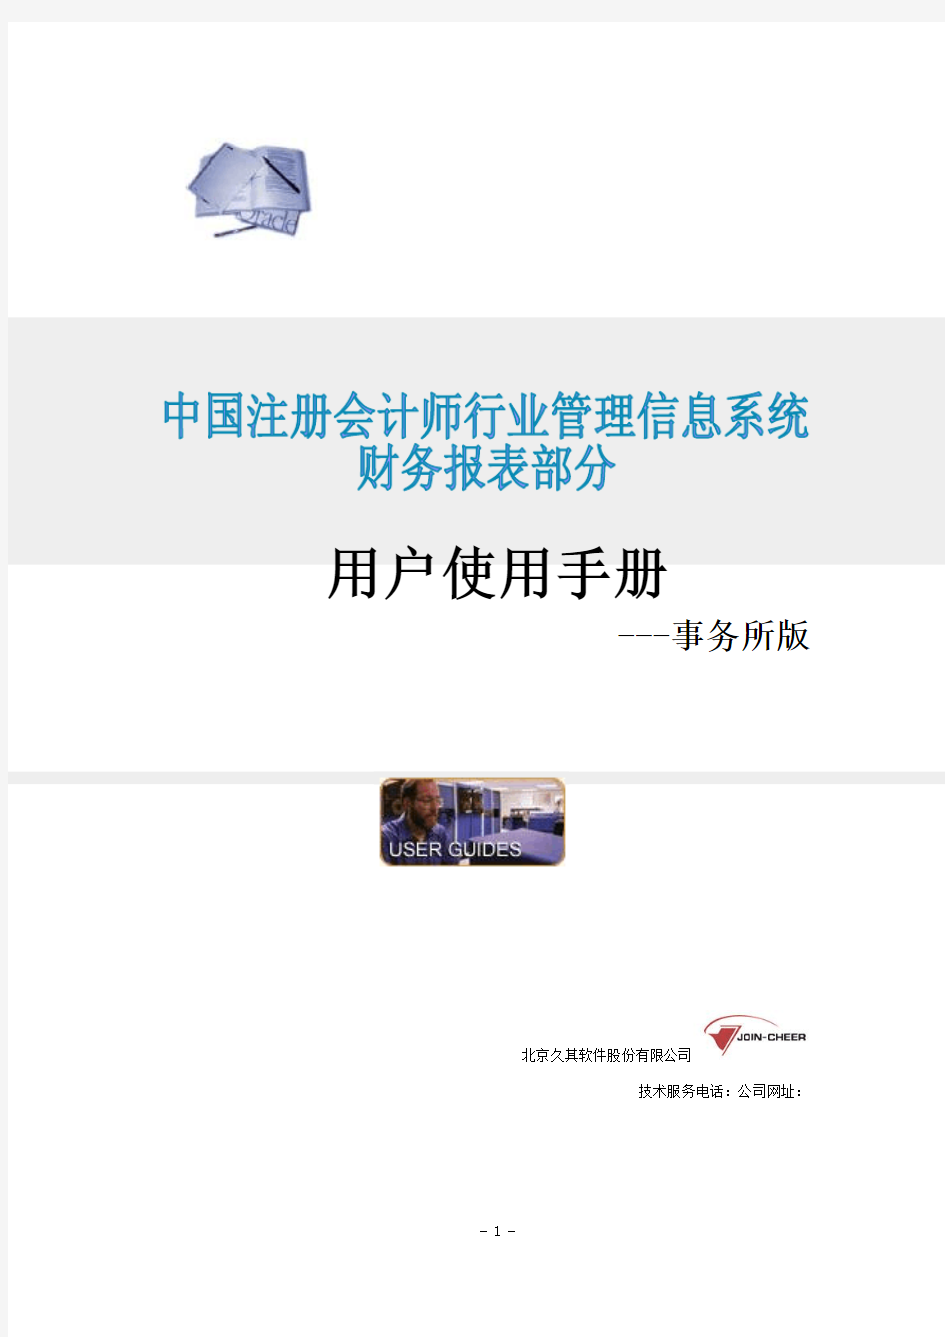 中国注册会计师行业管理信息系统 用户使用手册